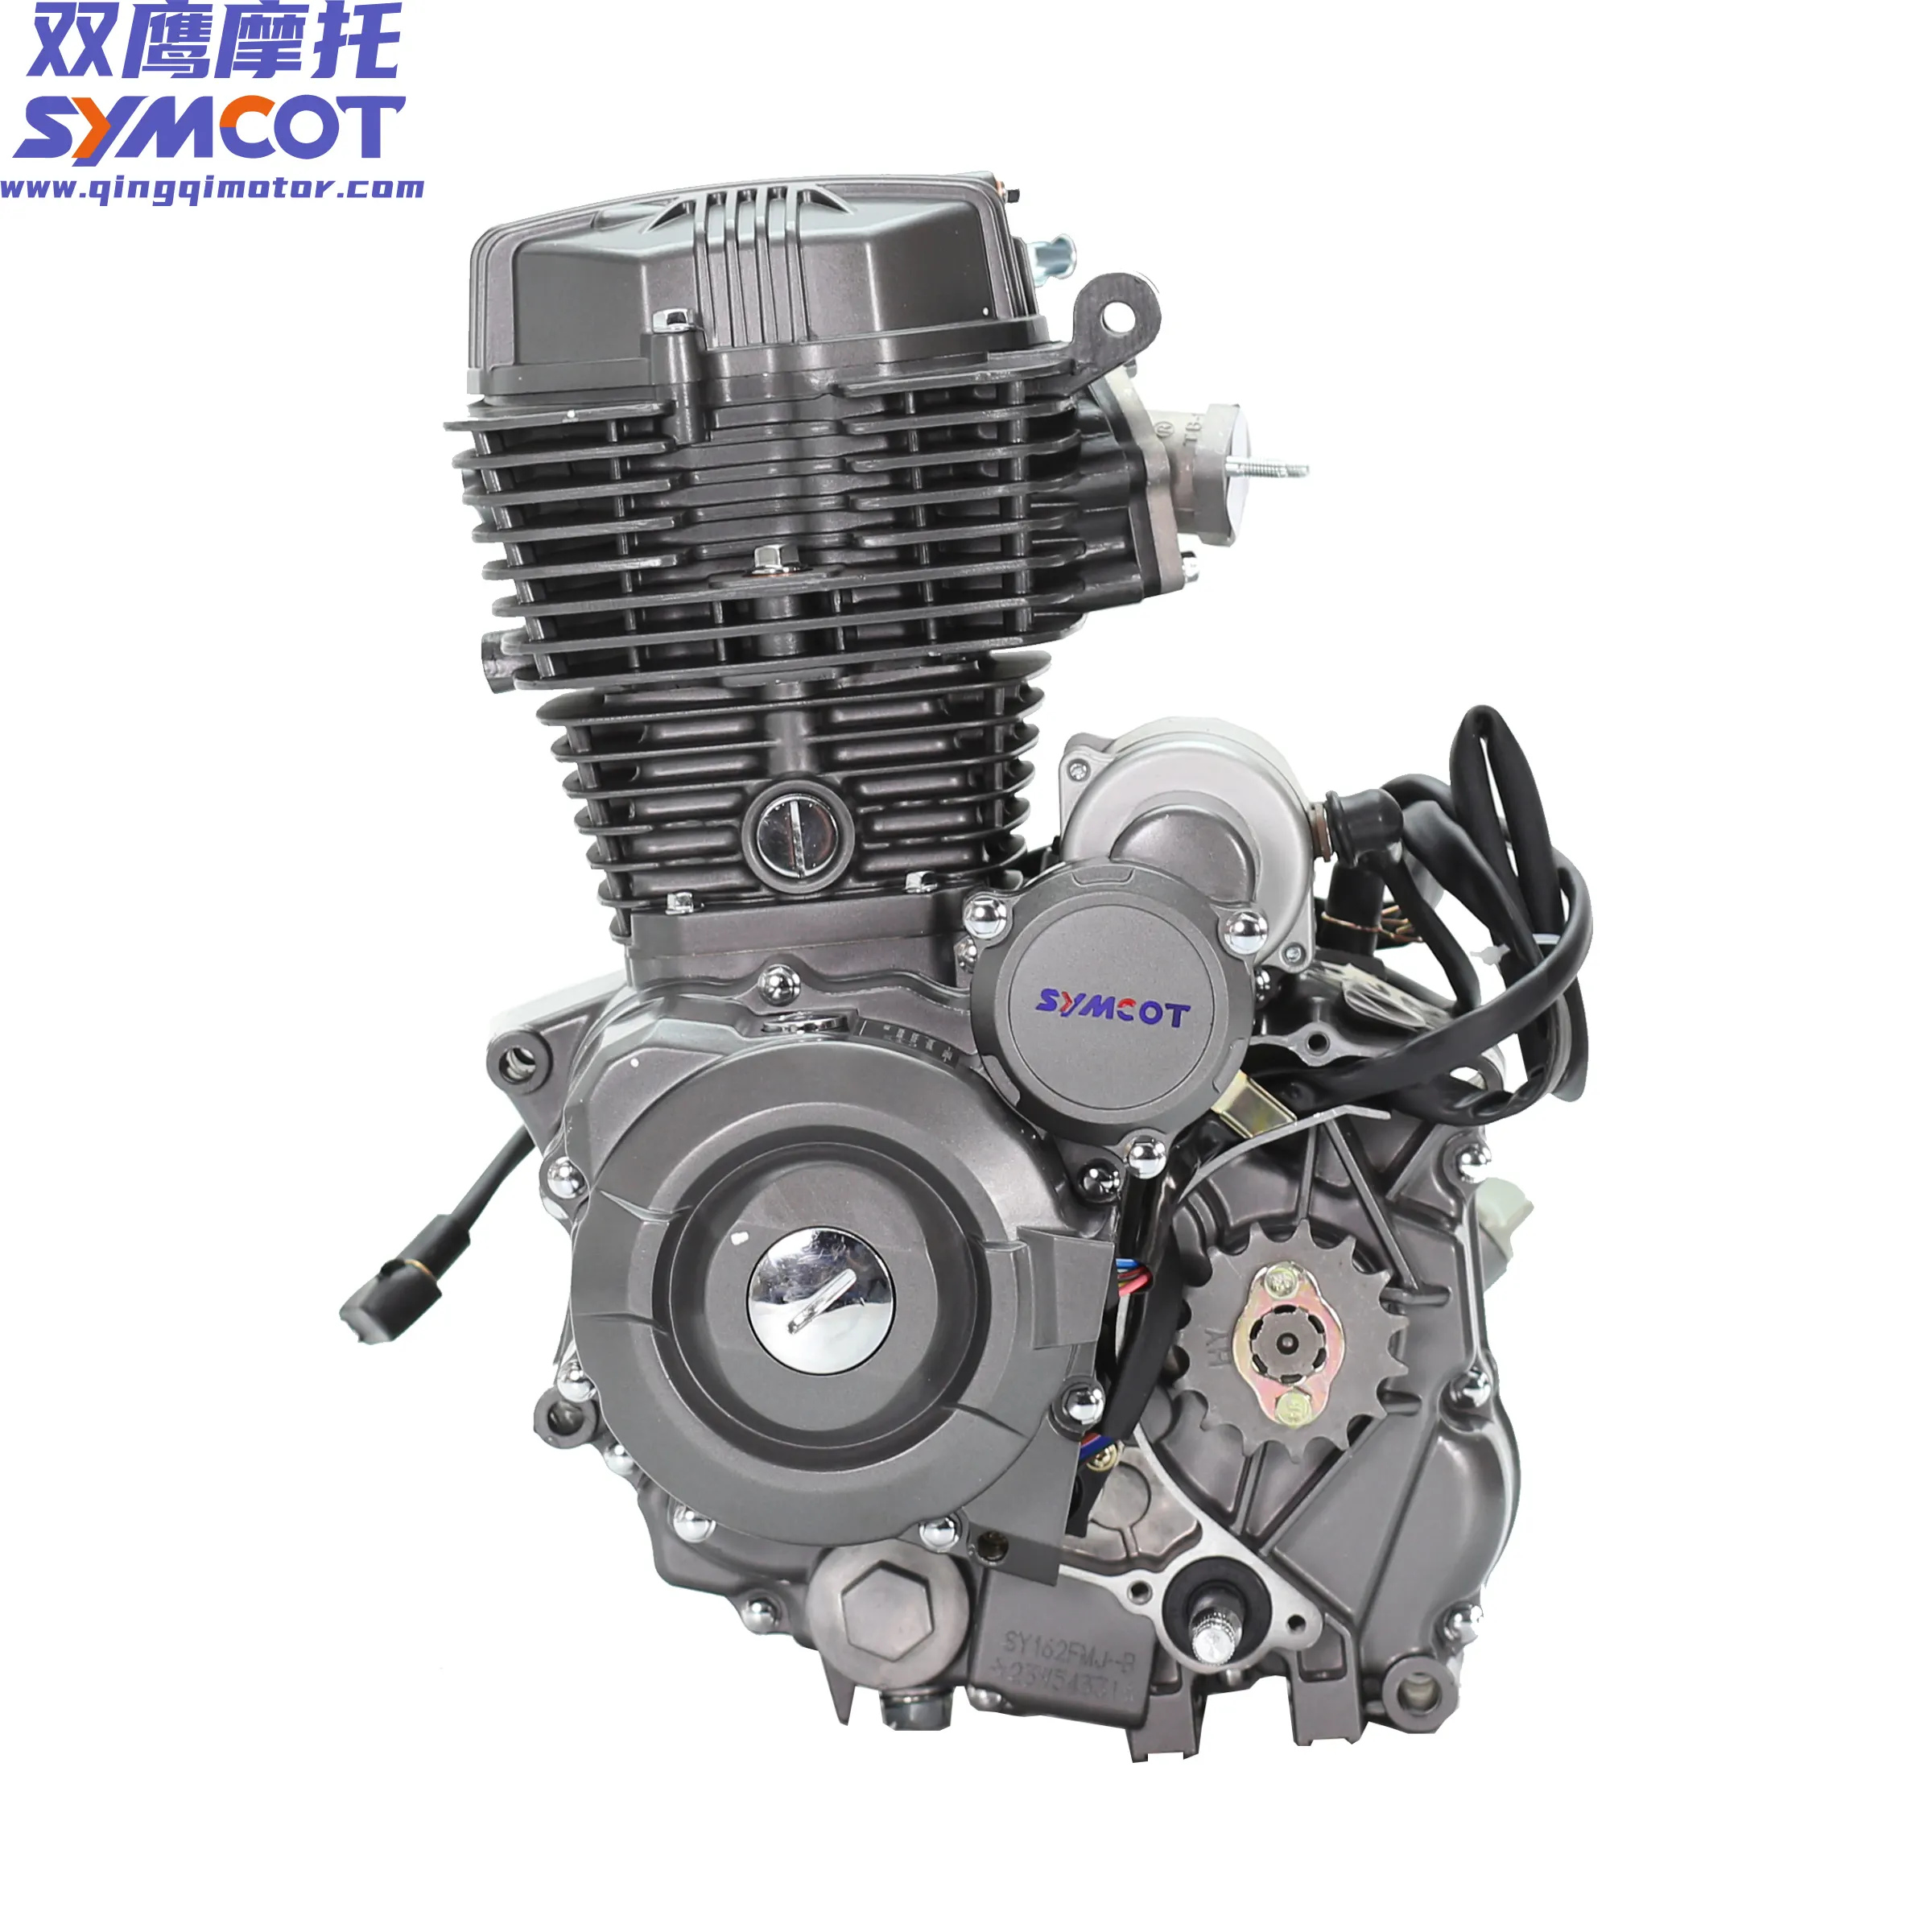 SYMCOT motosiklet motoru 150cc 200cc 250cc CG motor, tek silindirli 4 zamanlı hava soğutmalı, uygun CG GN